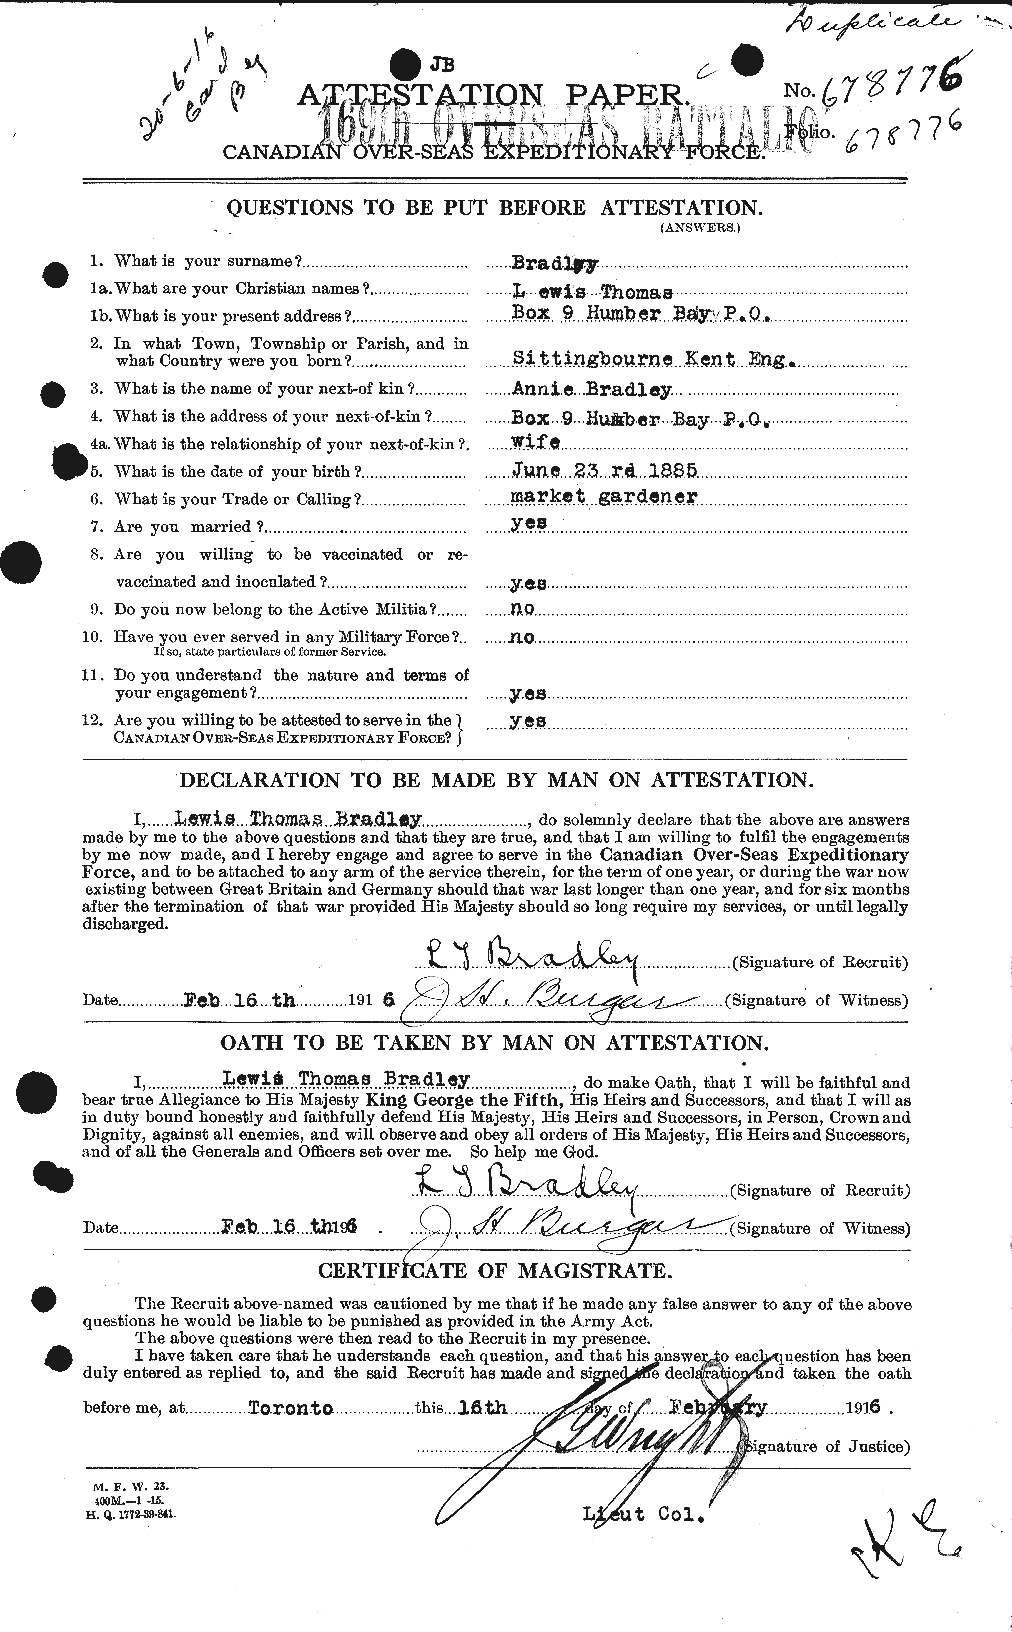 Dossiers du Personnel de la Première Guerre mondiale - CEC 259041a